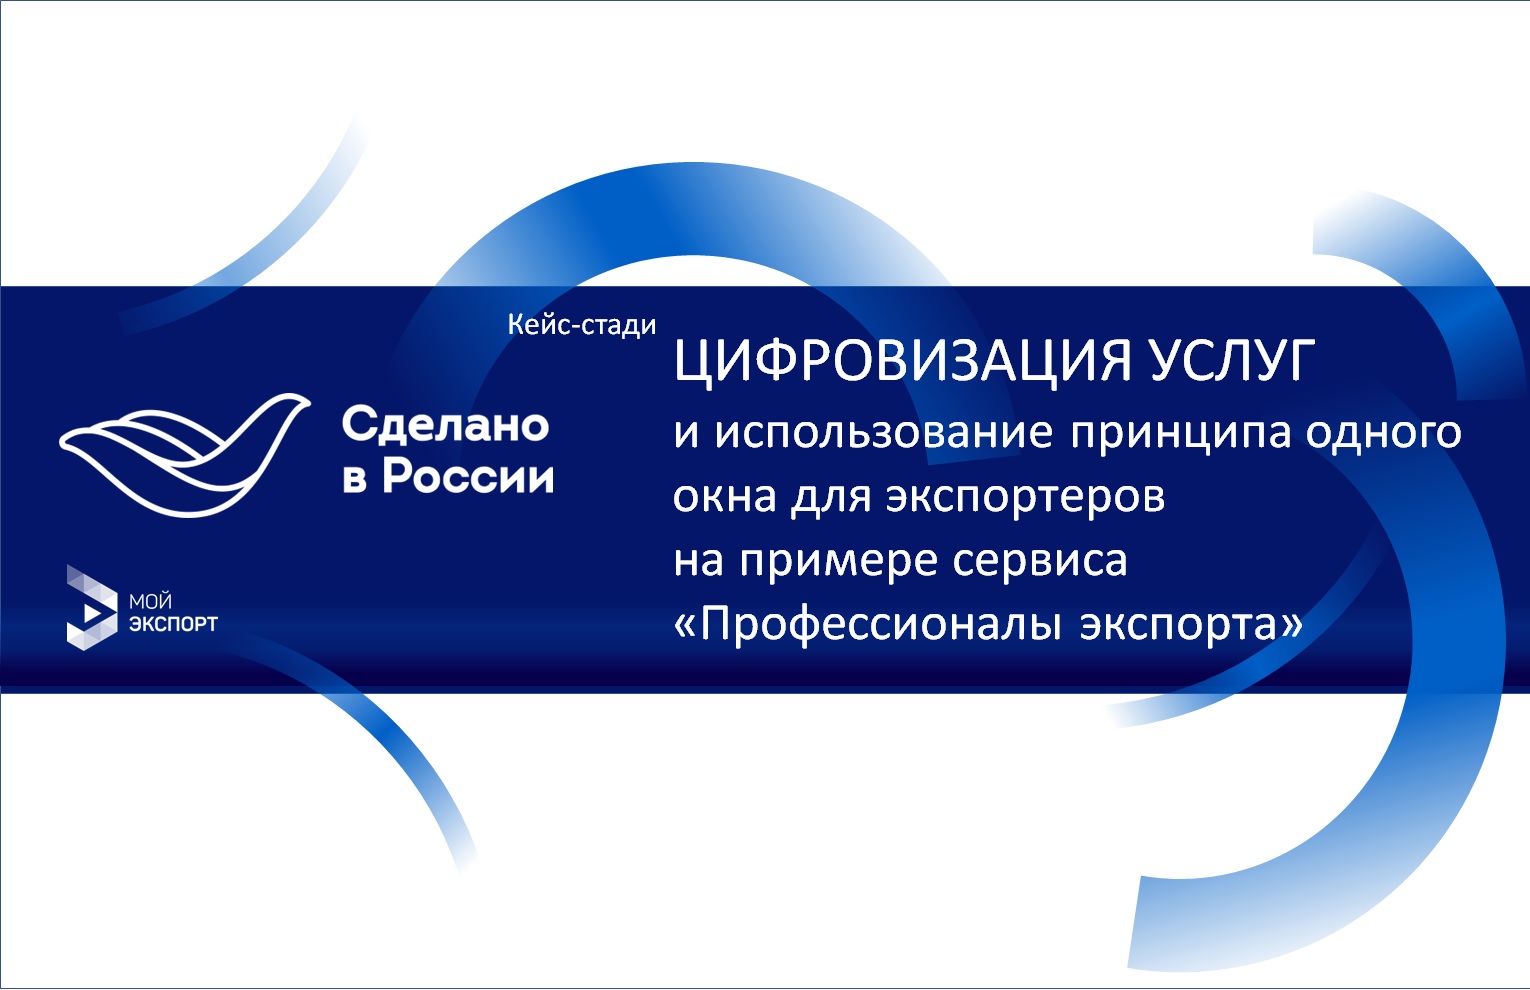 Сессия case-study "Цифровизация услуг и использование принципа одного окна для экспортеров на примере сервиса "Профессионалы экспорта" в рамках форума "Сделано в России"